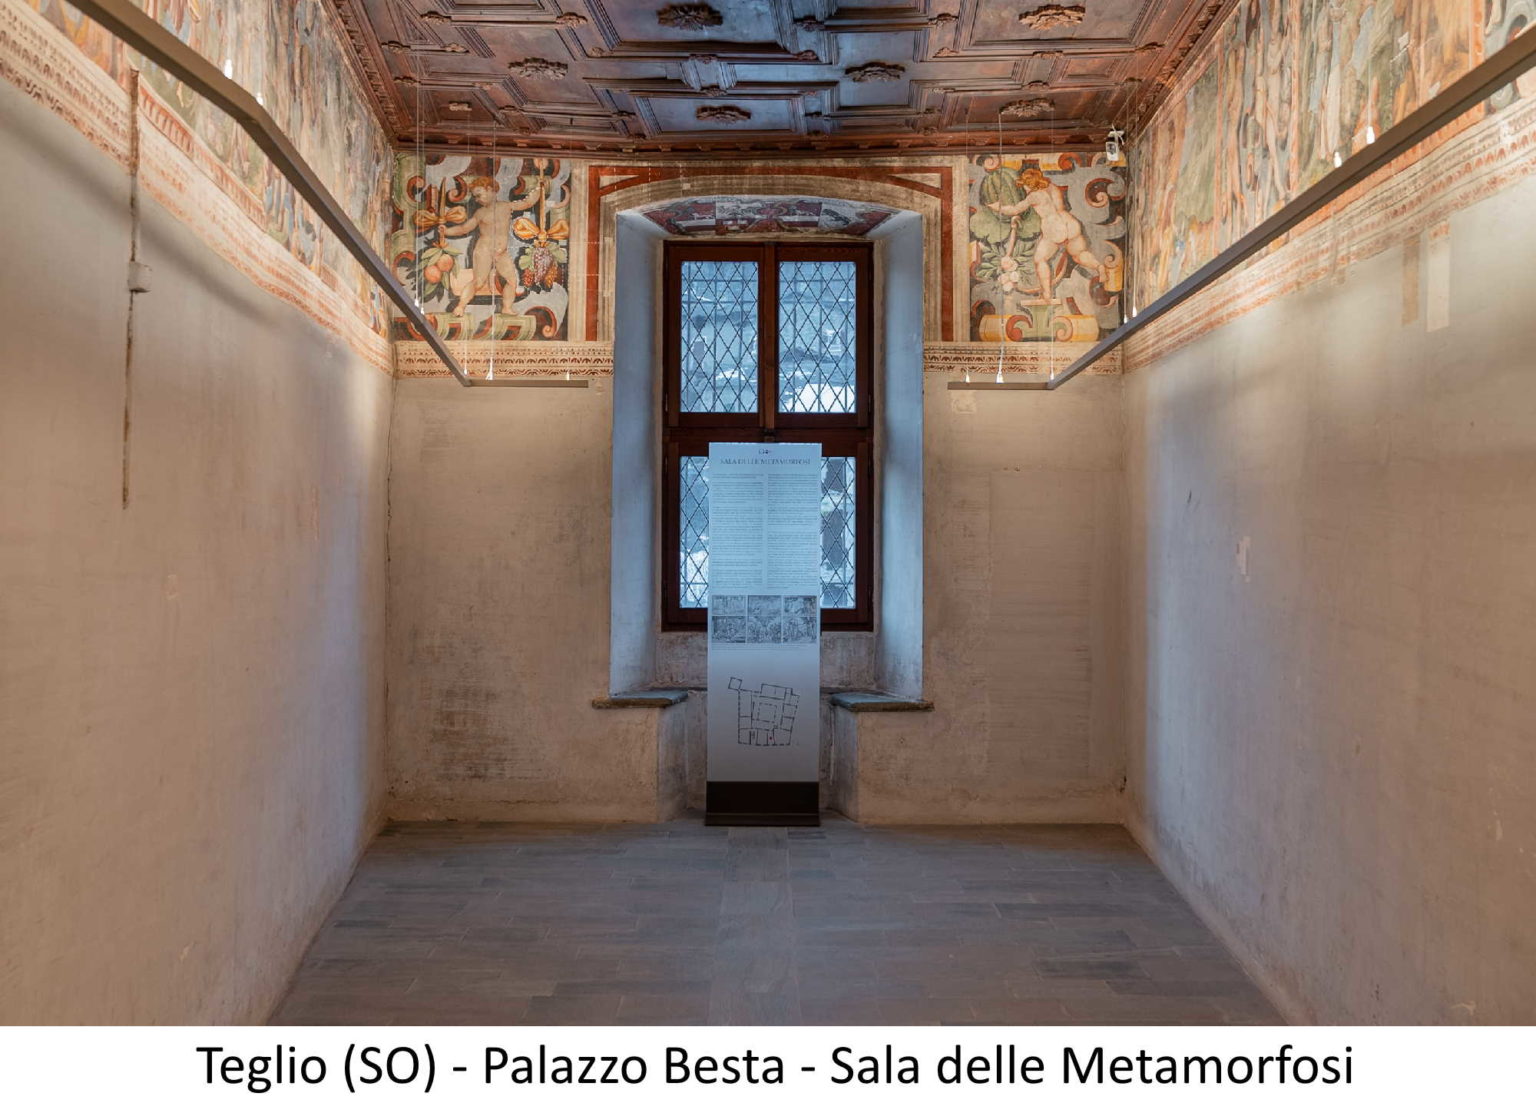 Teglio (SO) - Palazzo Besta - Sala delle Metamorfosi